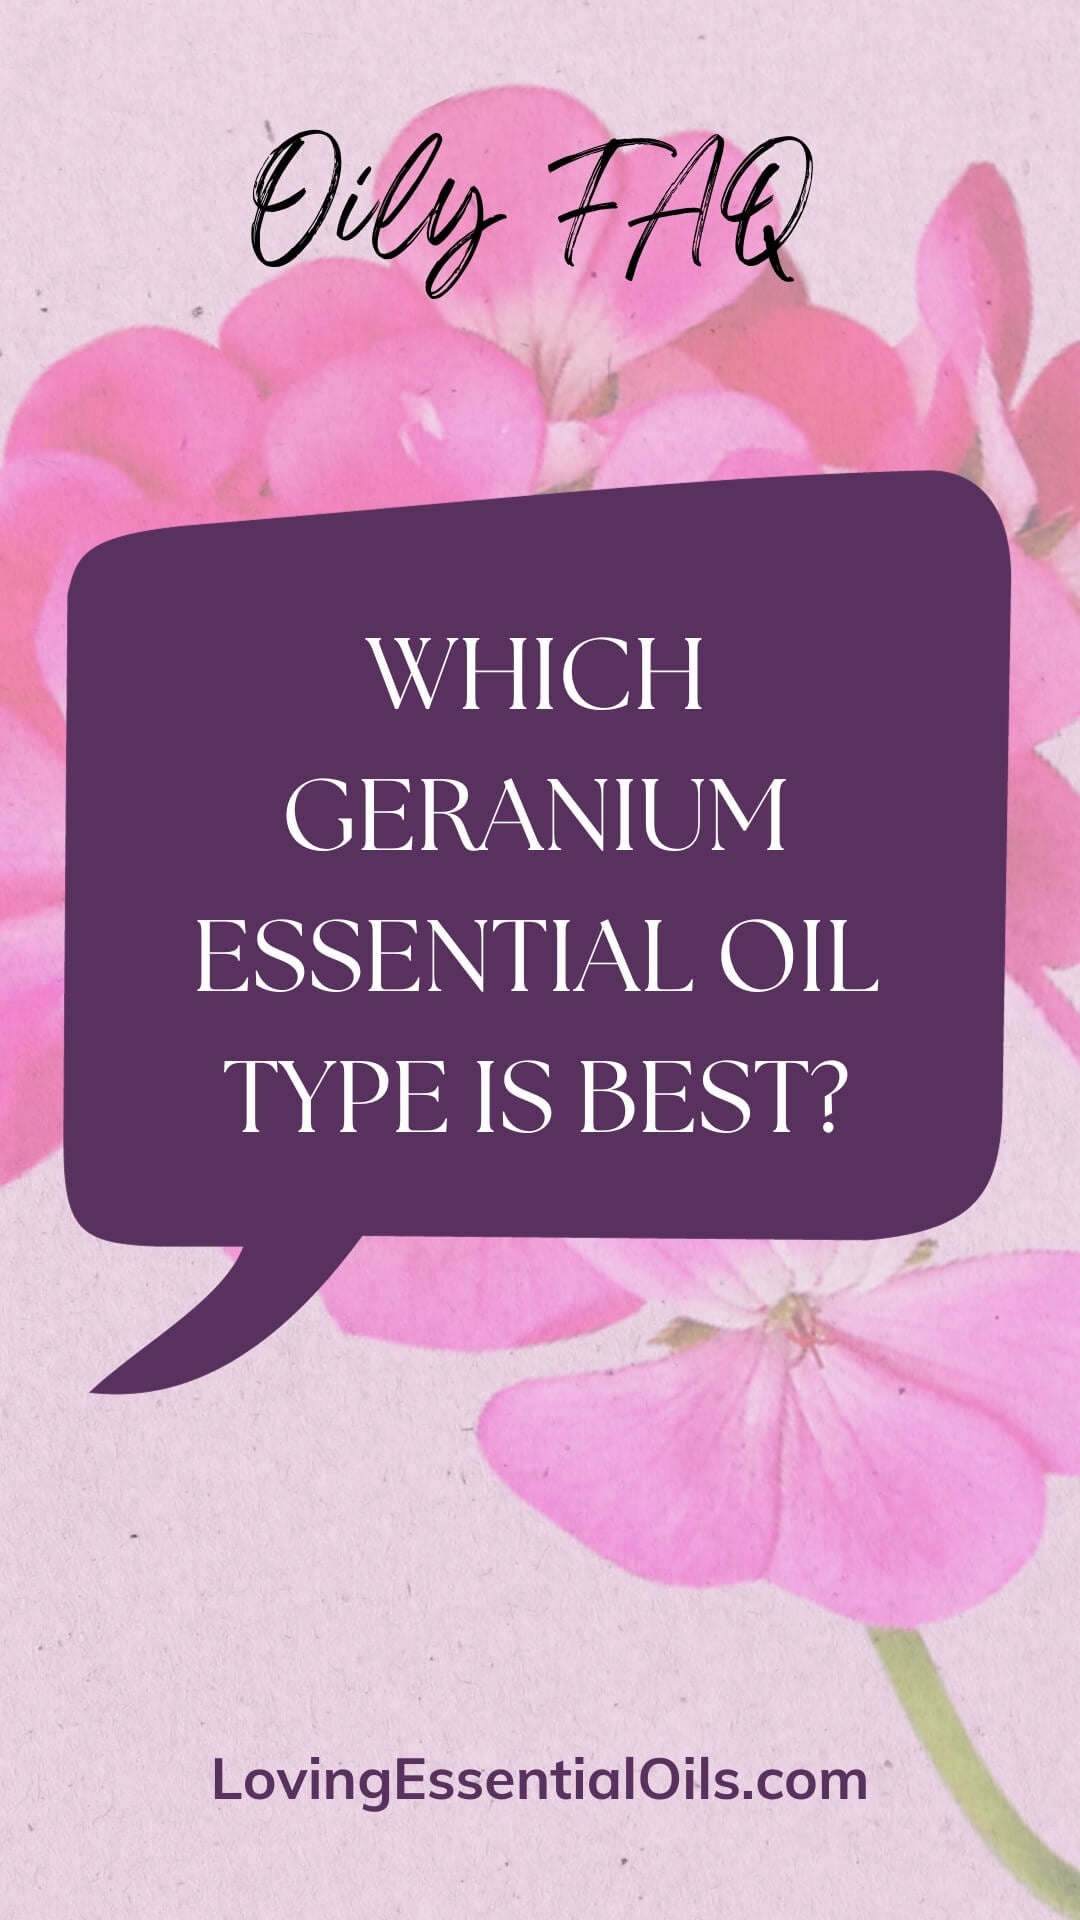 Types of Geranium Essential Oils by Loving Essential Oils